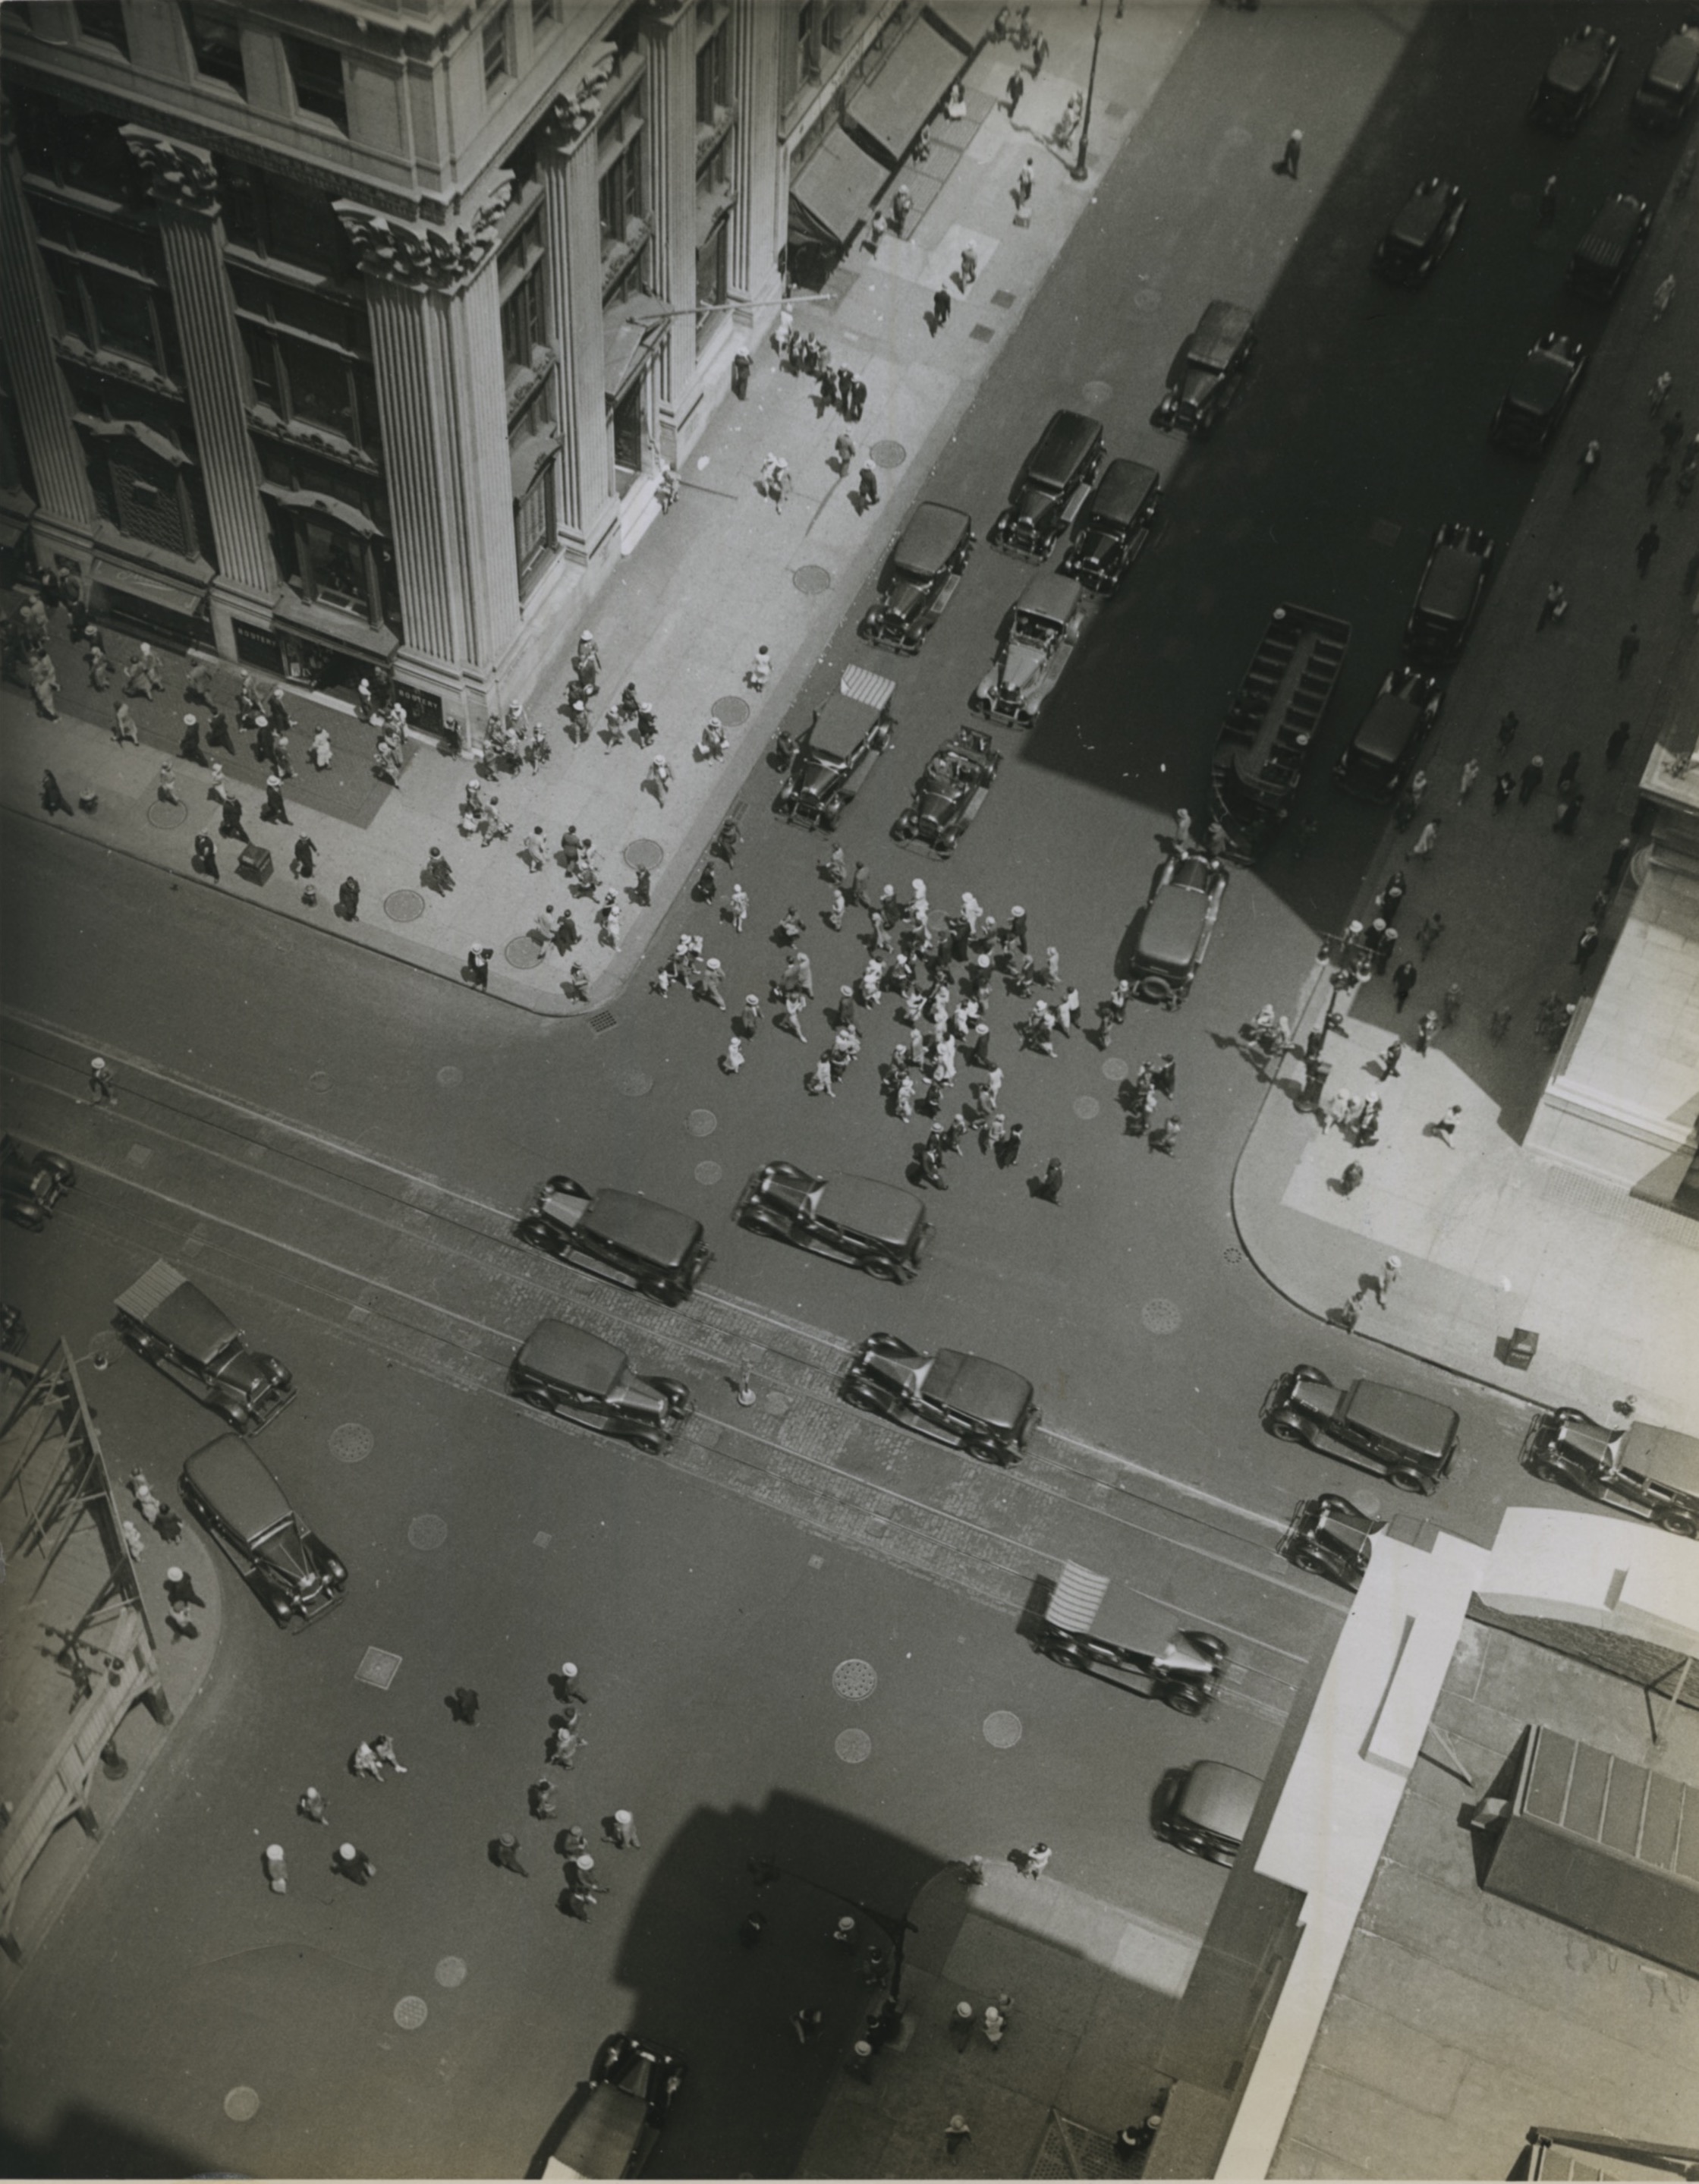 Rue de New York, USA, c. 1930